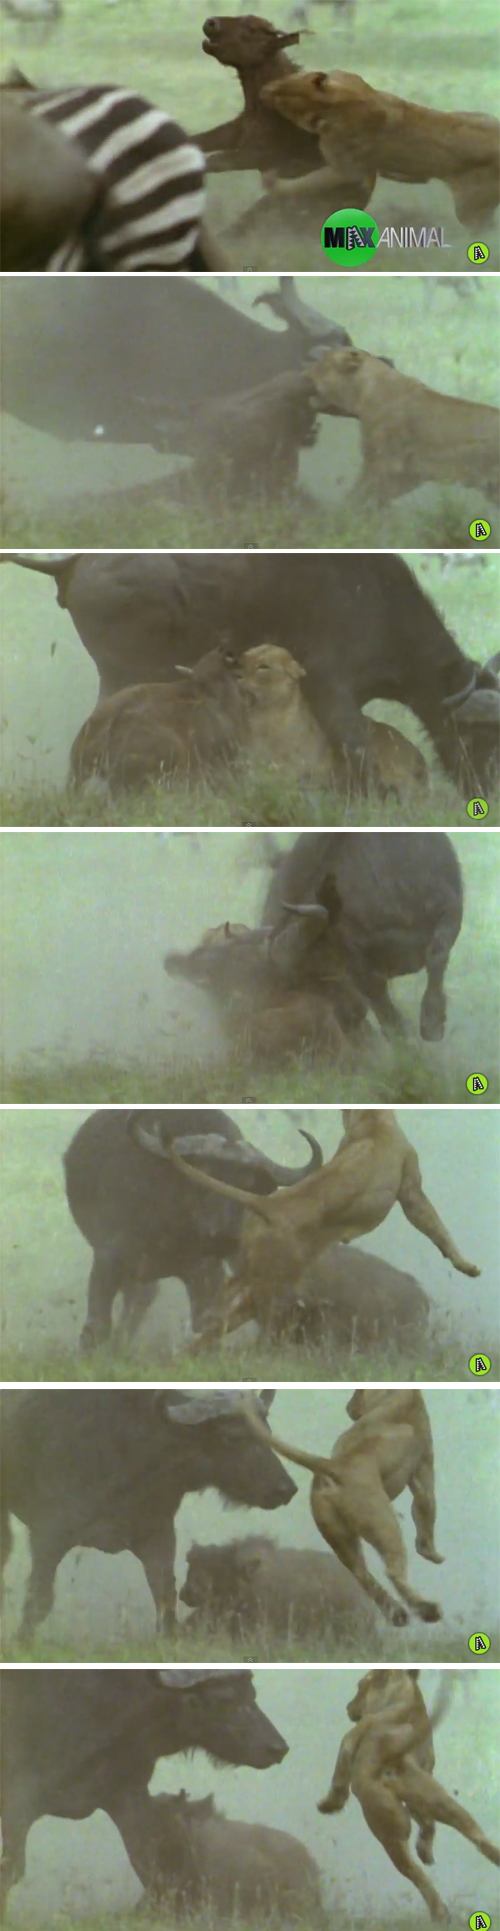 사자의 공격으로부터 새끼를 지켜내는 물소(버팔로) 사진출처: 유튜브 영상(@MaxAnimal) 캡처